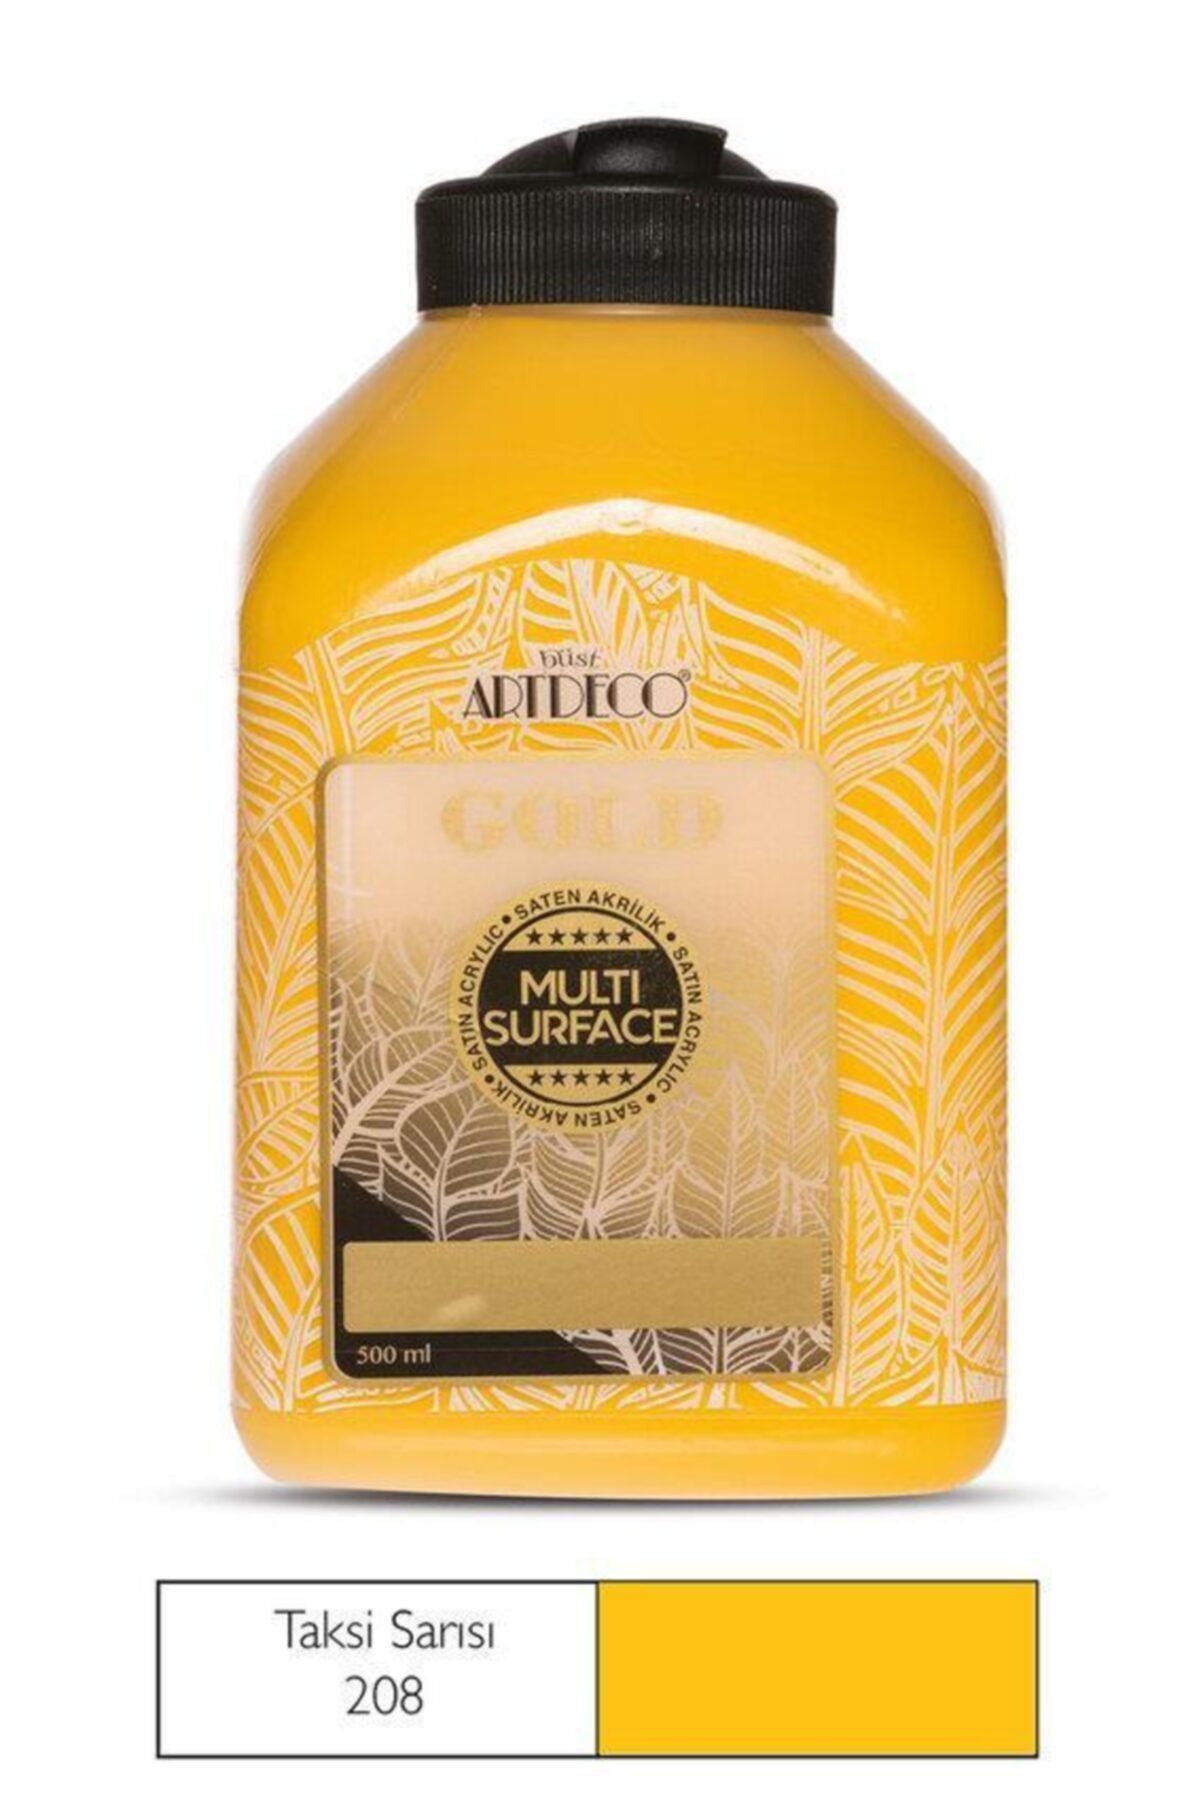 Artdeco Gold Multi Surface Akrilik Boya 500 ml. 208 TAKSİ SARISI